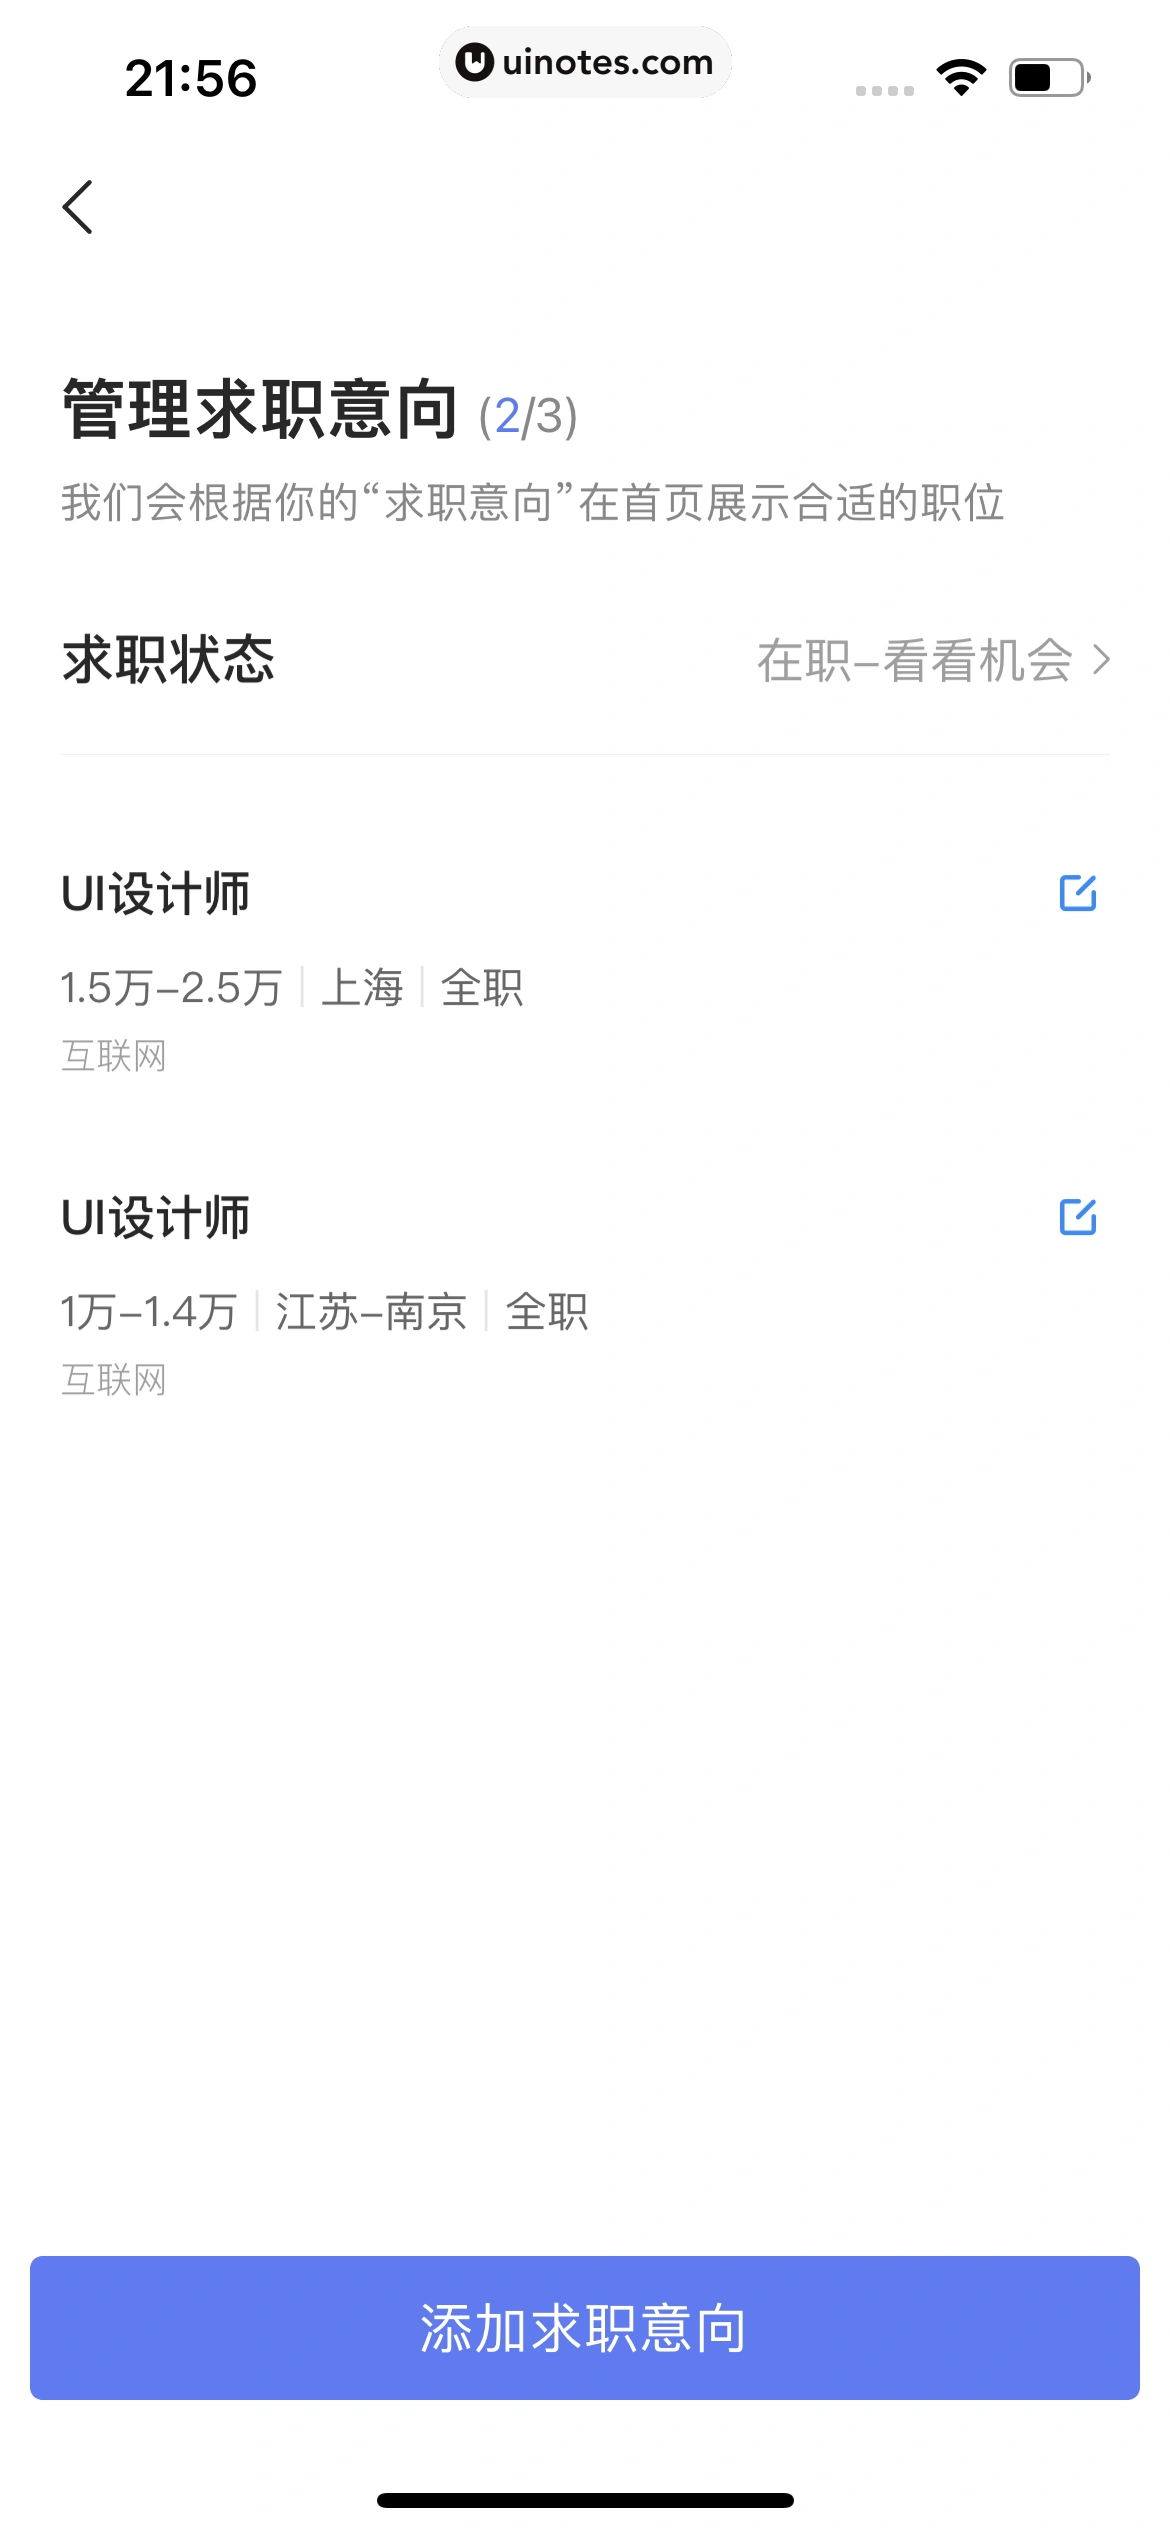 智联招聘 App 截图 040 - UI Notes